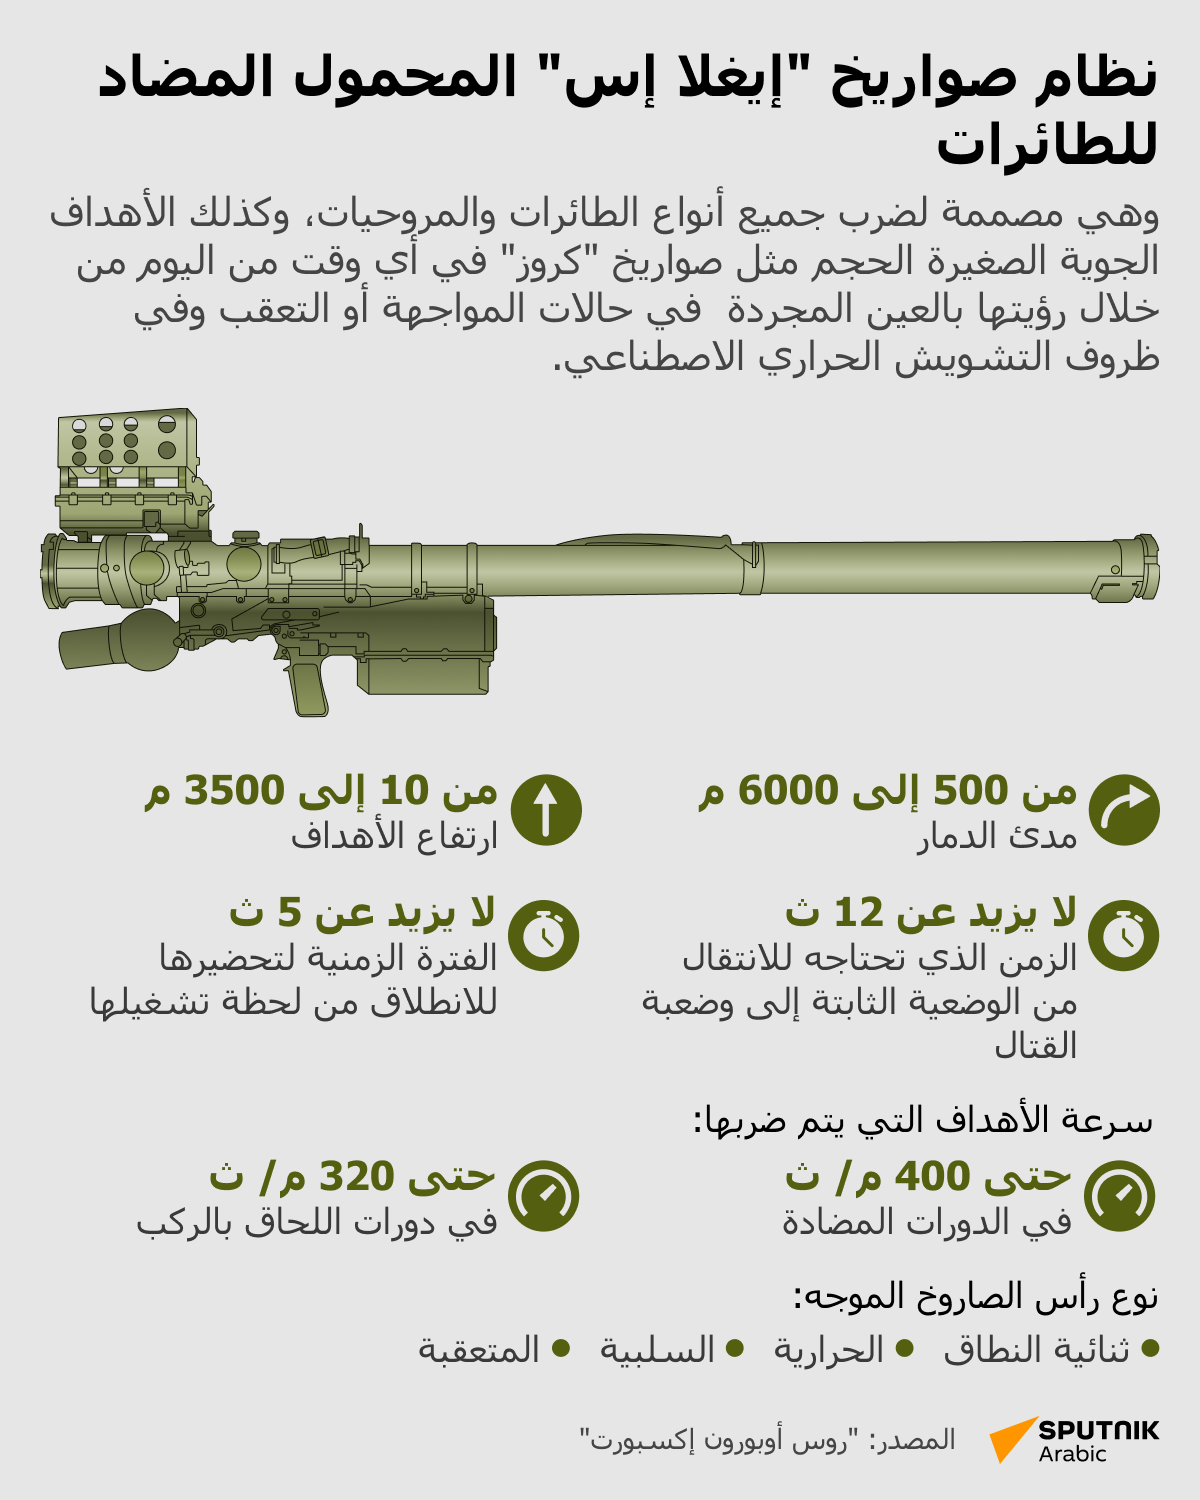 نظام صواريخ إيغلا إس المحمول المضاد للطائرات - سبوتنيك عربي